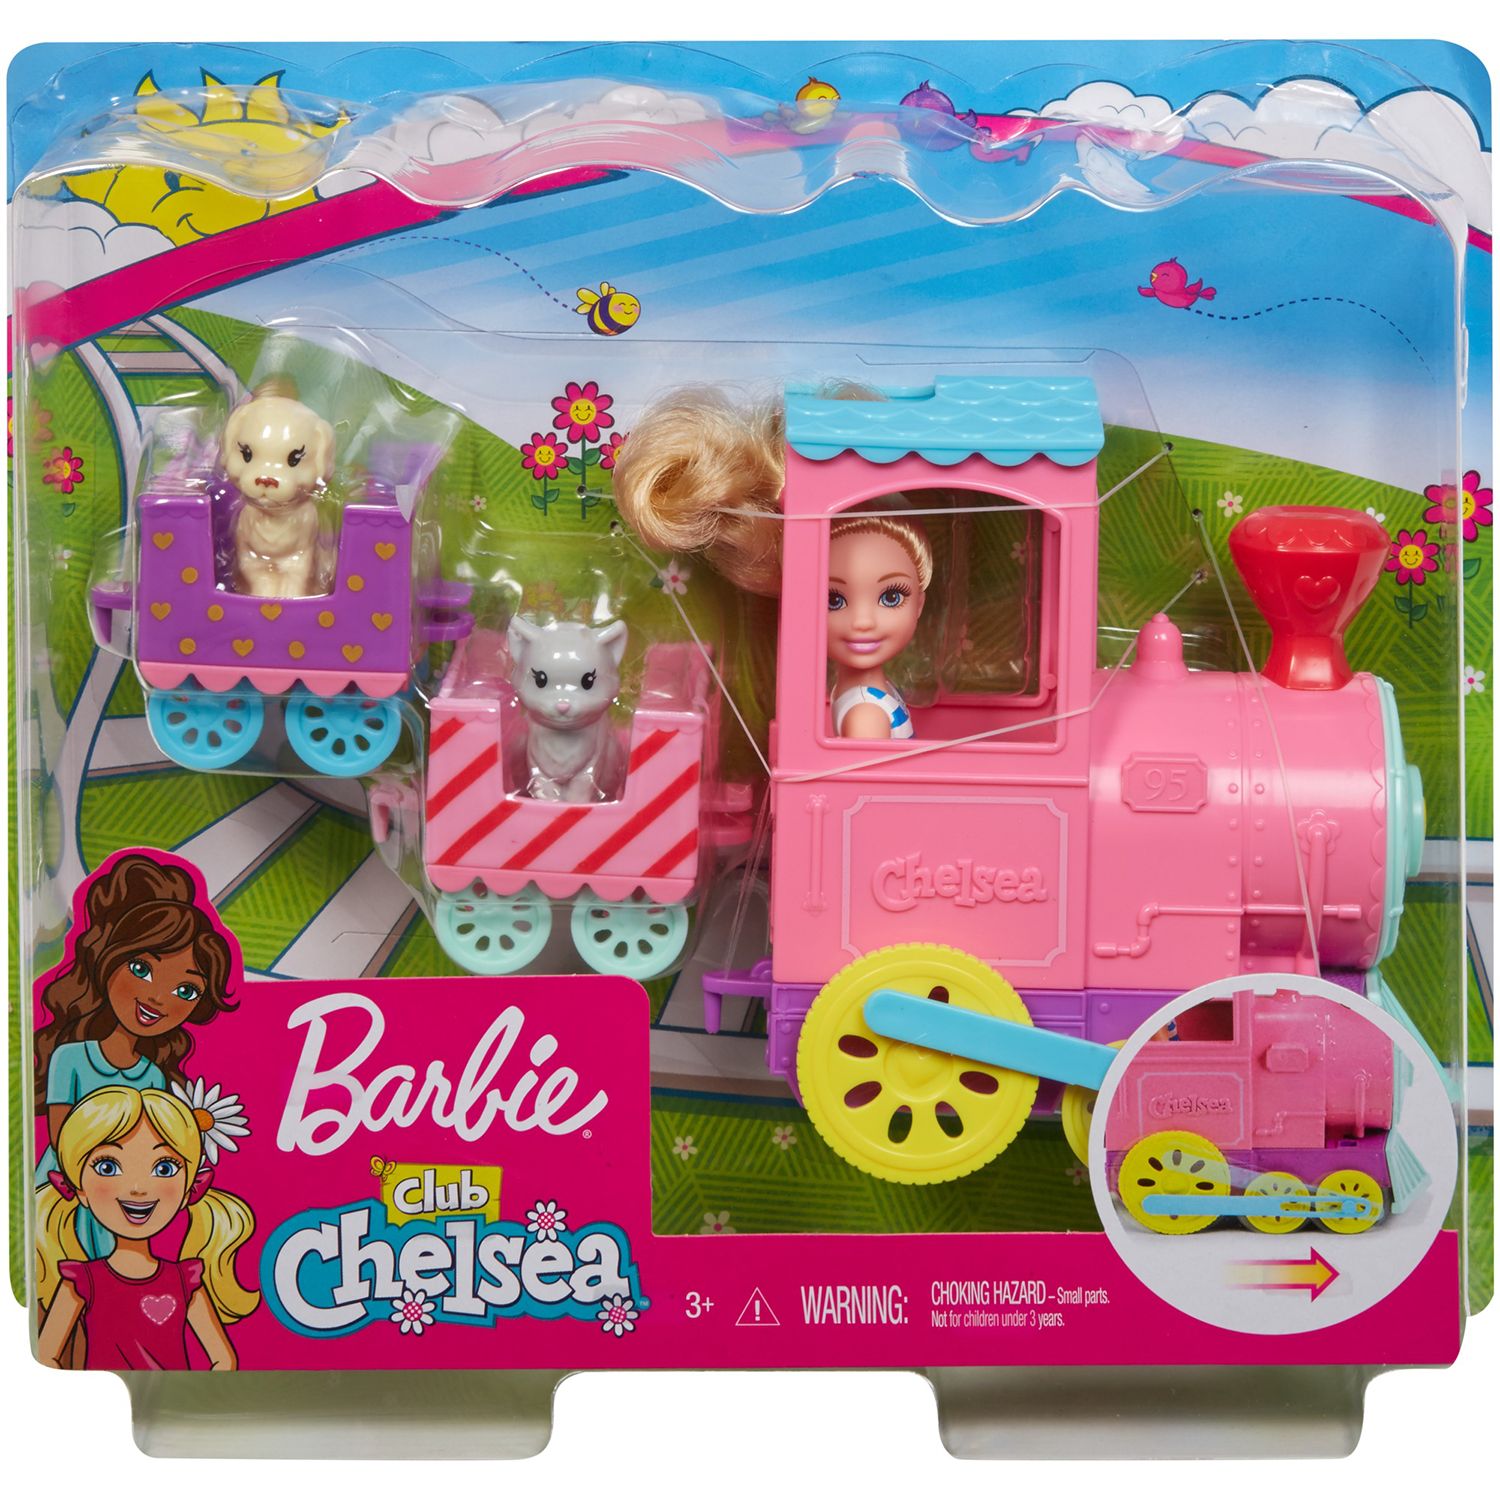 barbie club chelsea choo choo train